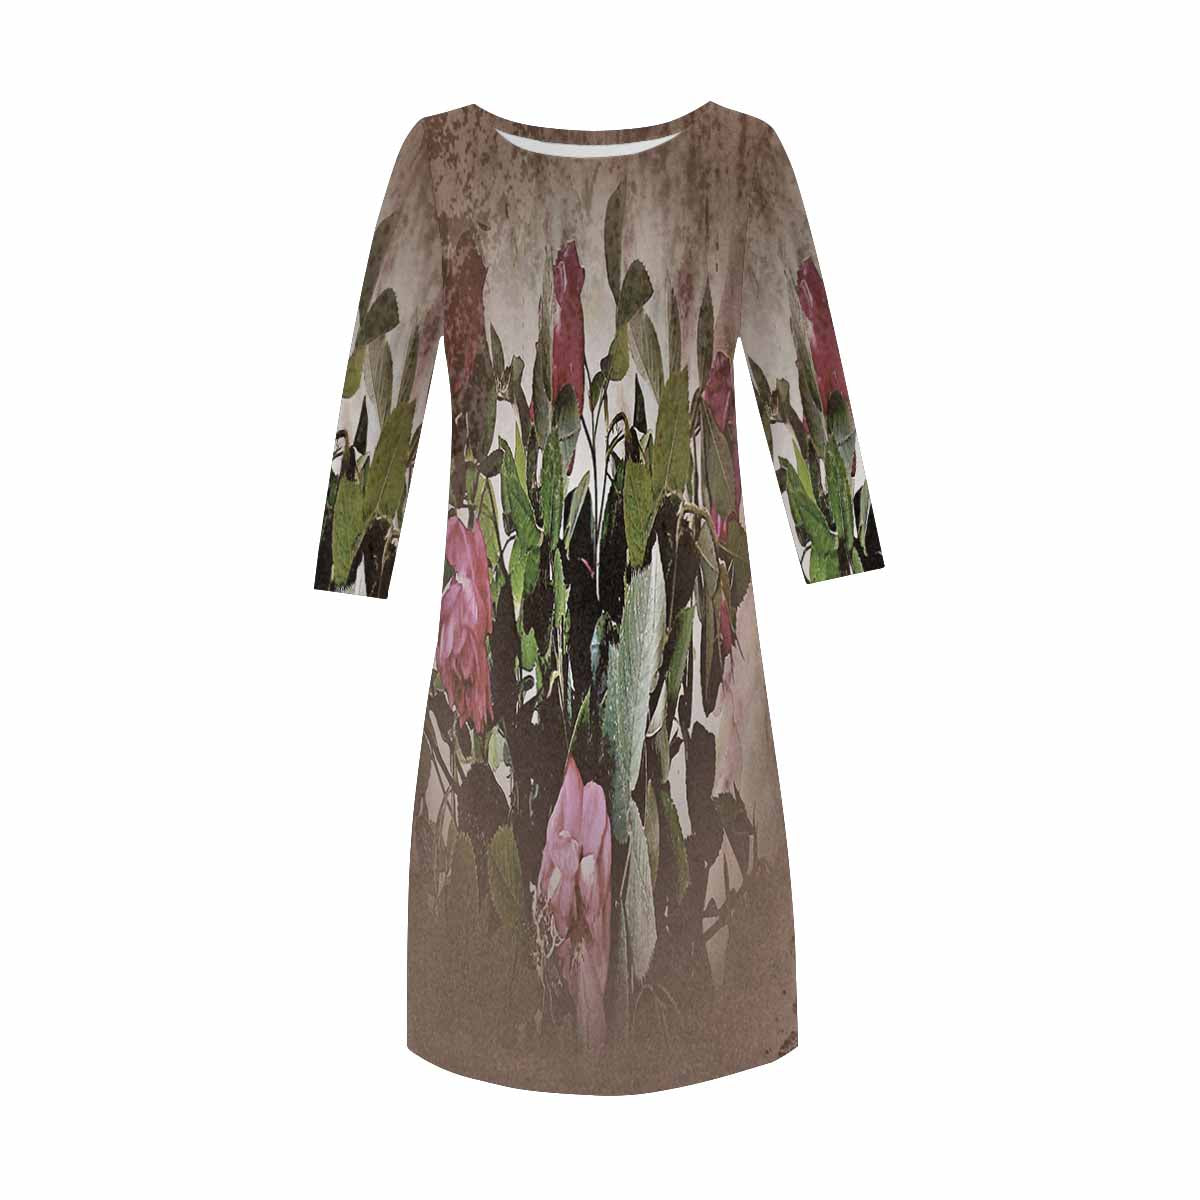 Vintage floral loose dress, model D29532 Design 22x